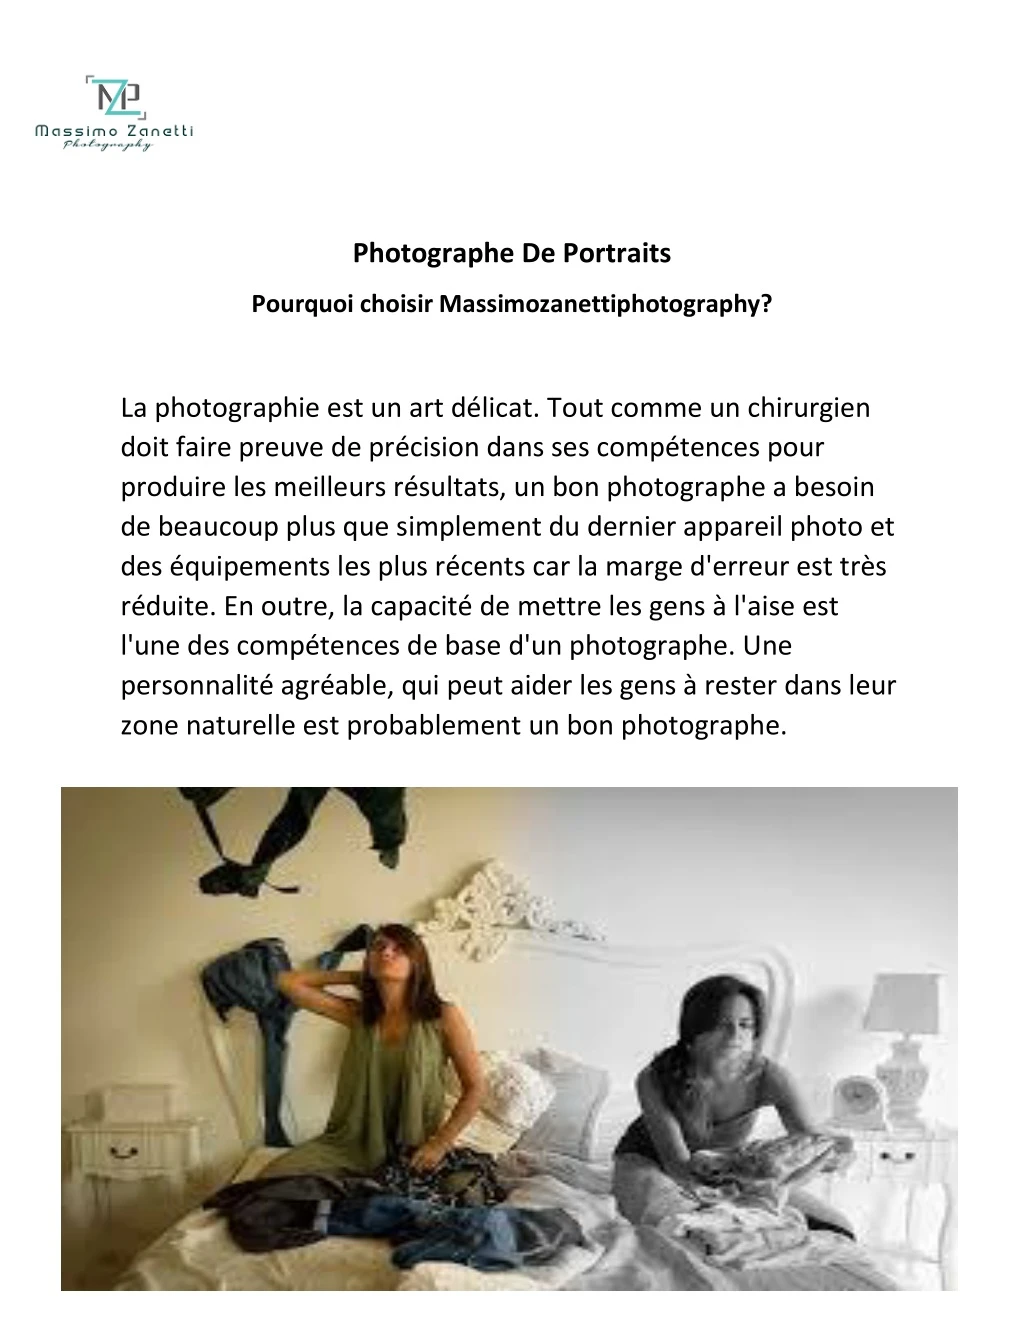 photographe de portraits